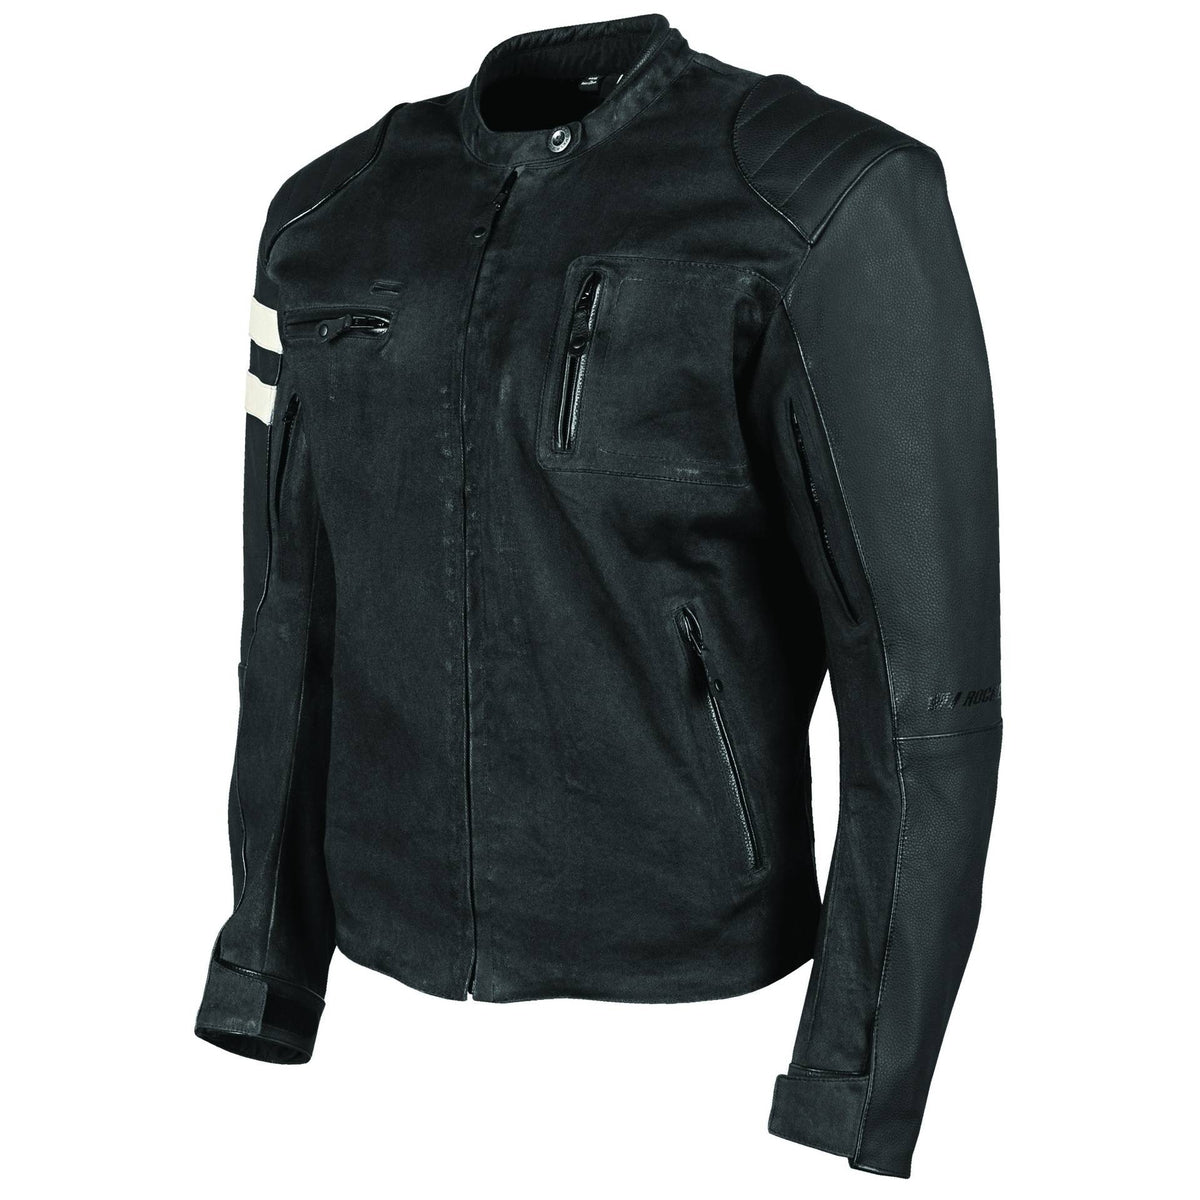 Joe Rocket 67 Leather/Textile Jacket